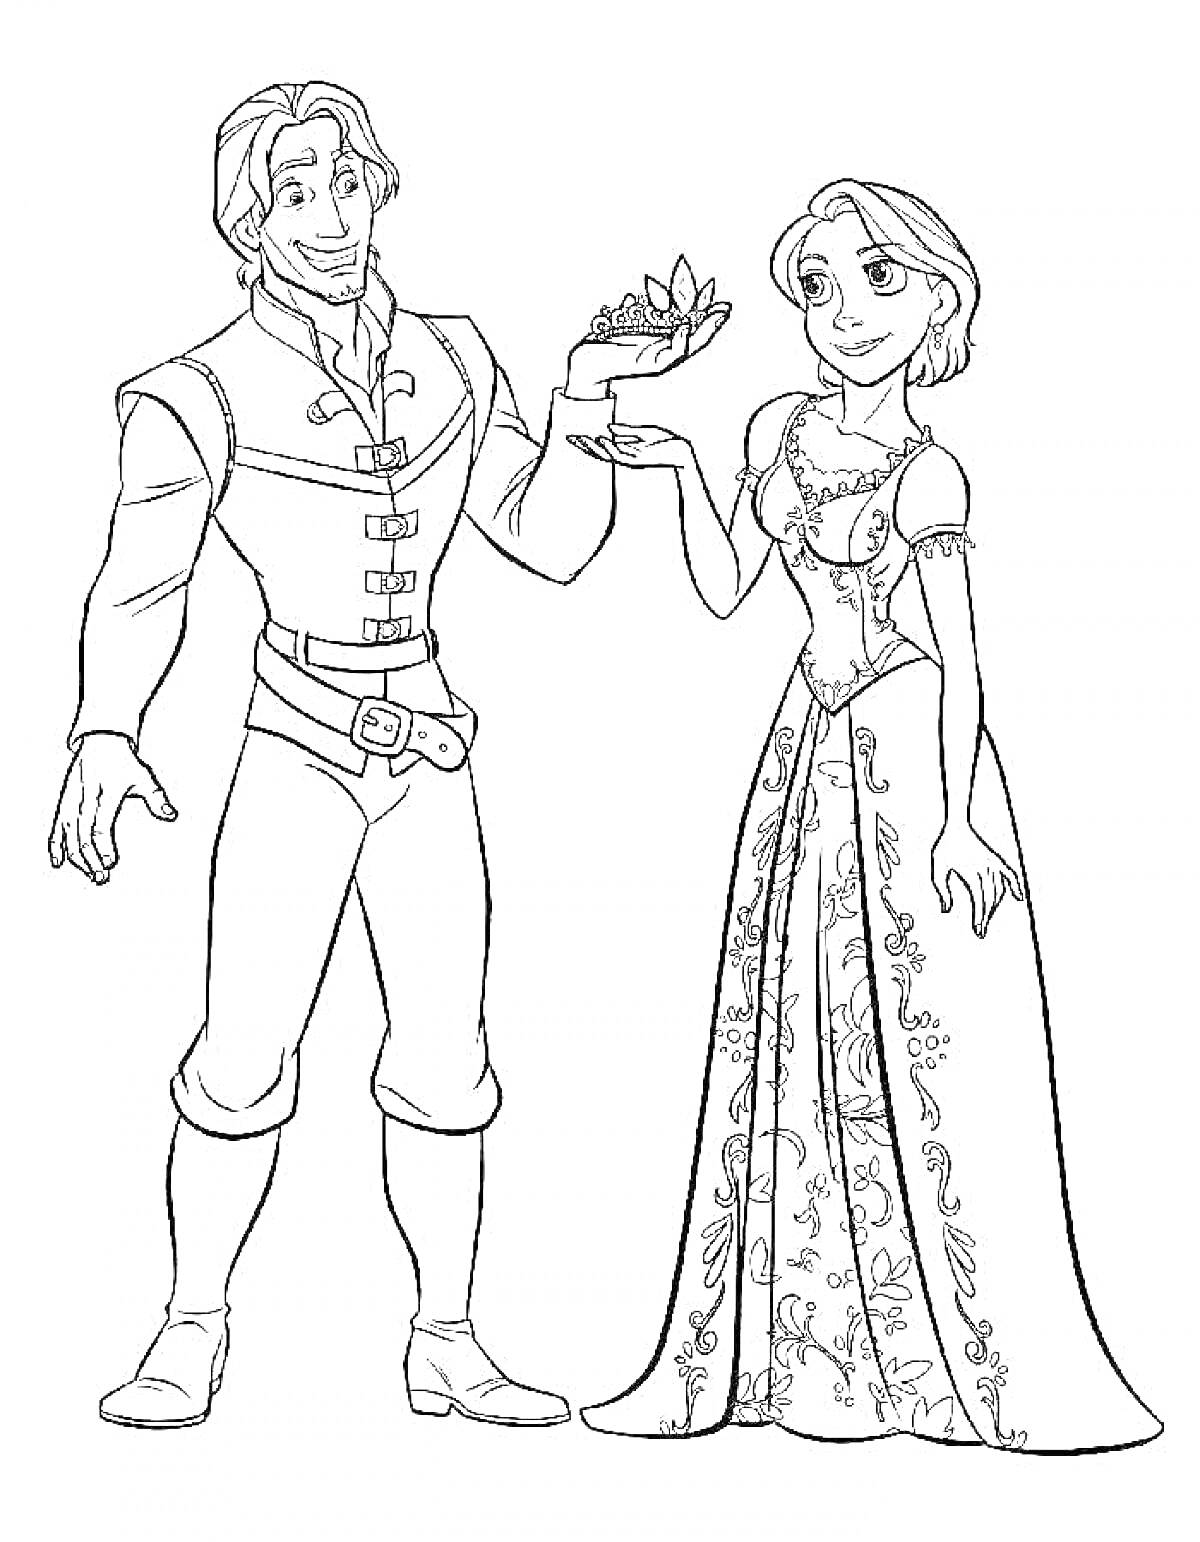 Раскраска Принцесса и принц, стоящие рядом, принц держит корону, принцесса в длинном украшенном платье